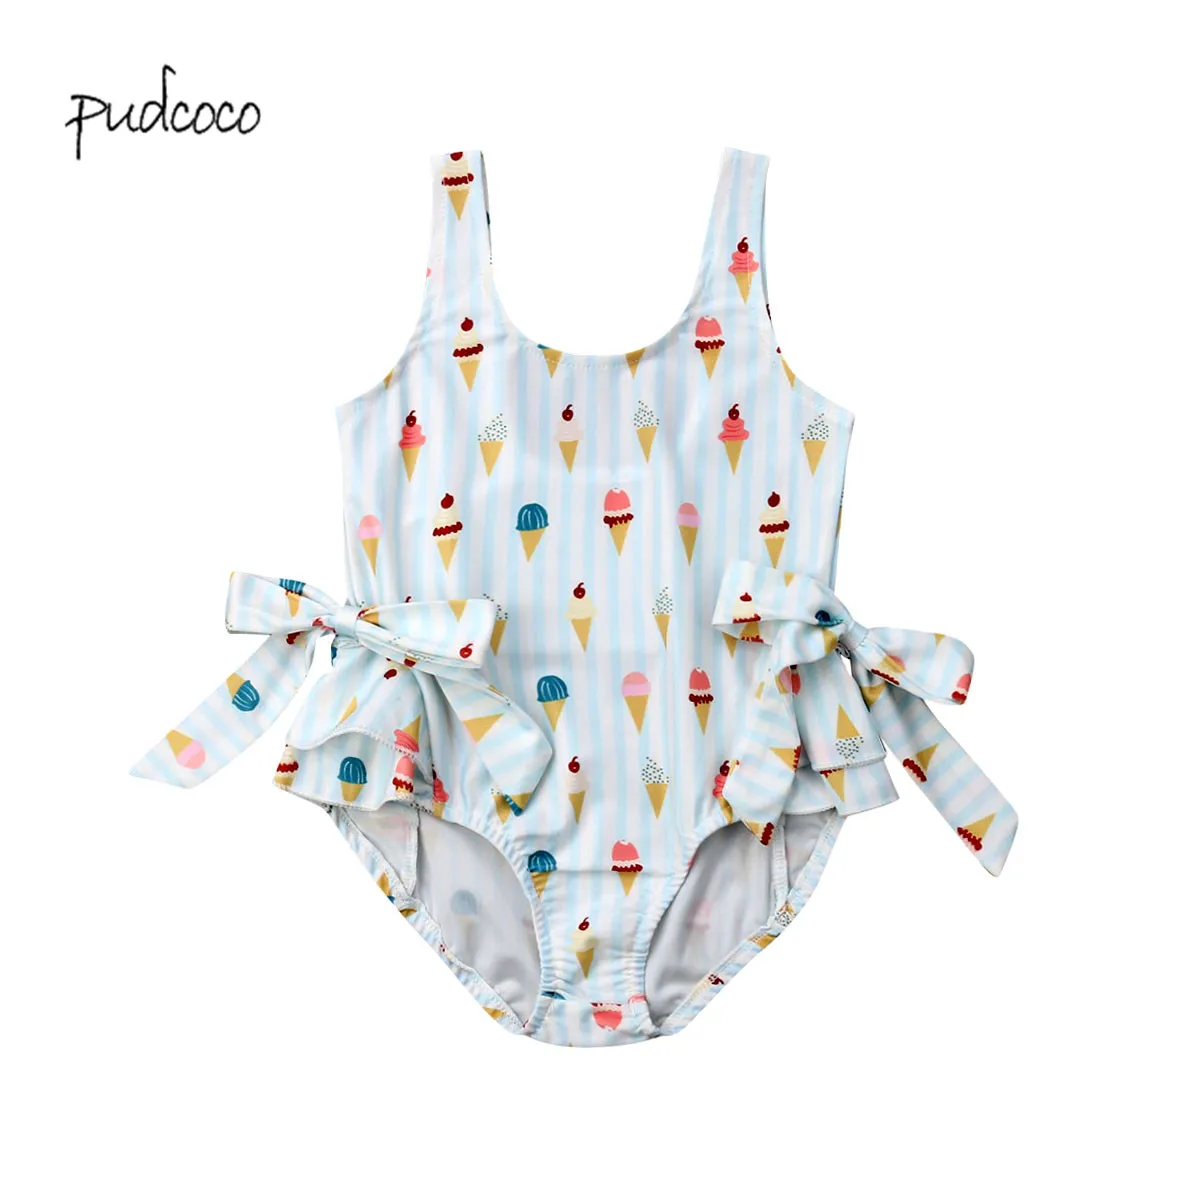 Фото Новый бренд Pudcoco Модный Купальник для малышей девочек праздничный пляжный